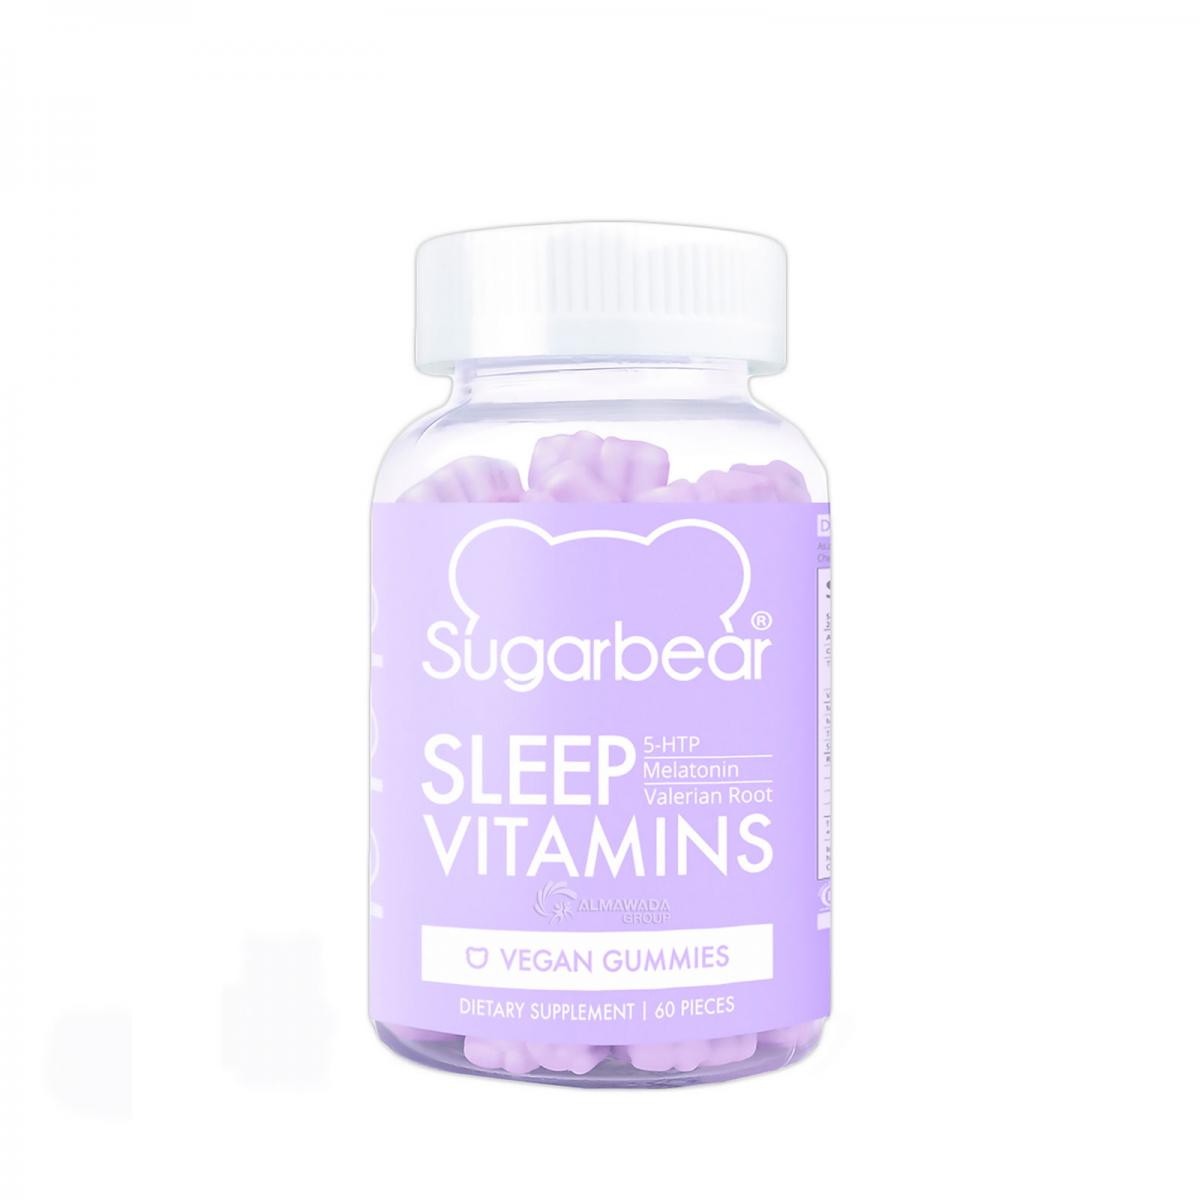 پاستیل خواب sleep - Sleep vitamins sugarbear